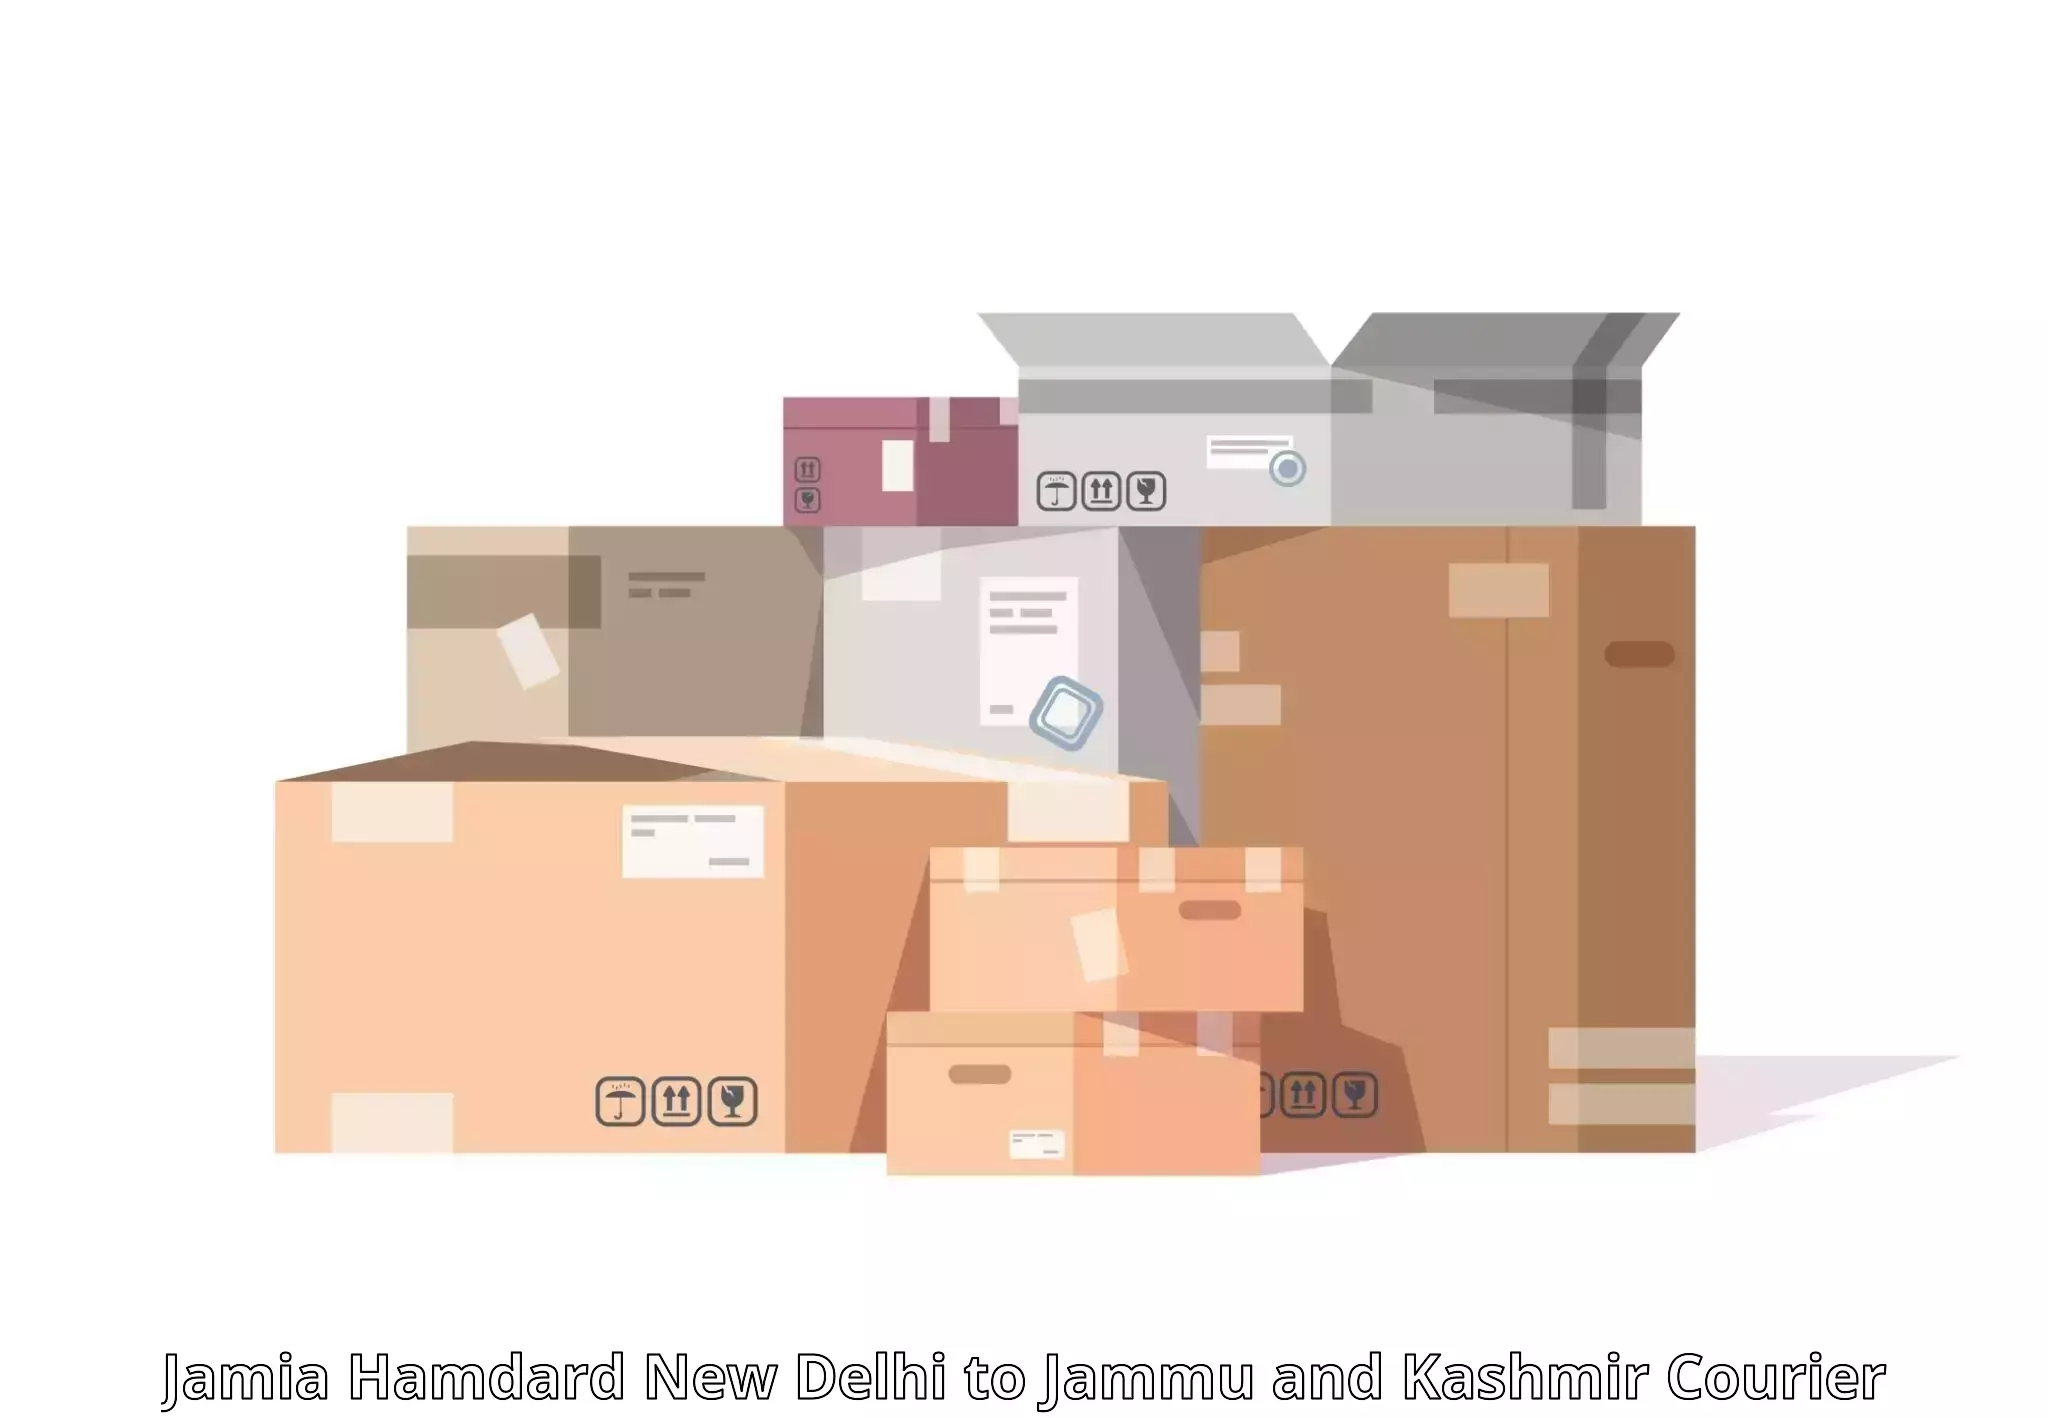 Cargo delivery service Jamia Hamdard New Delhi to Kargil